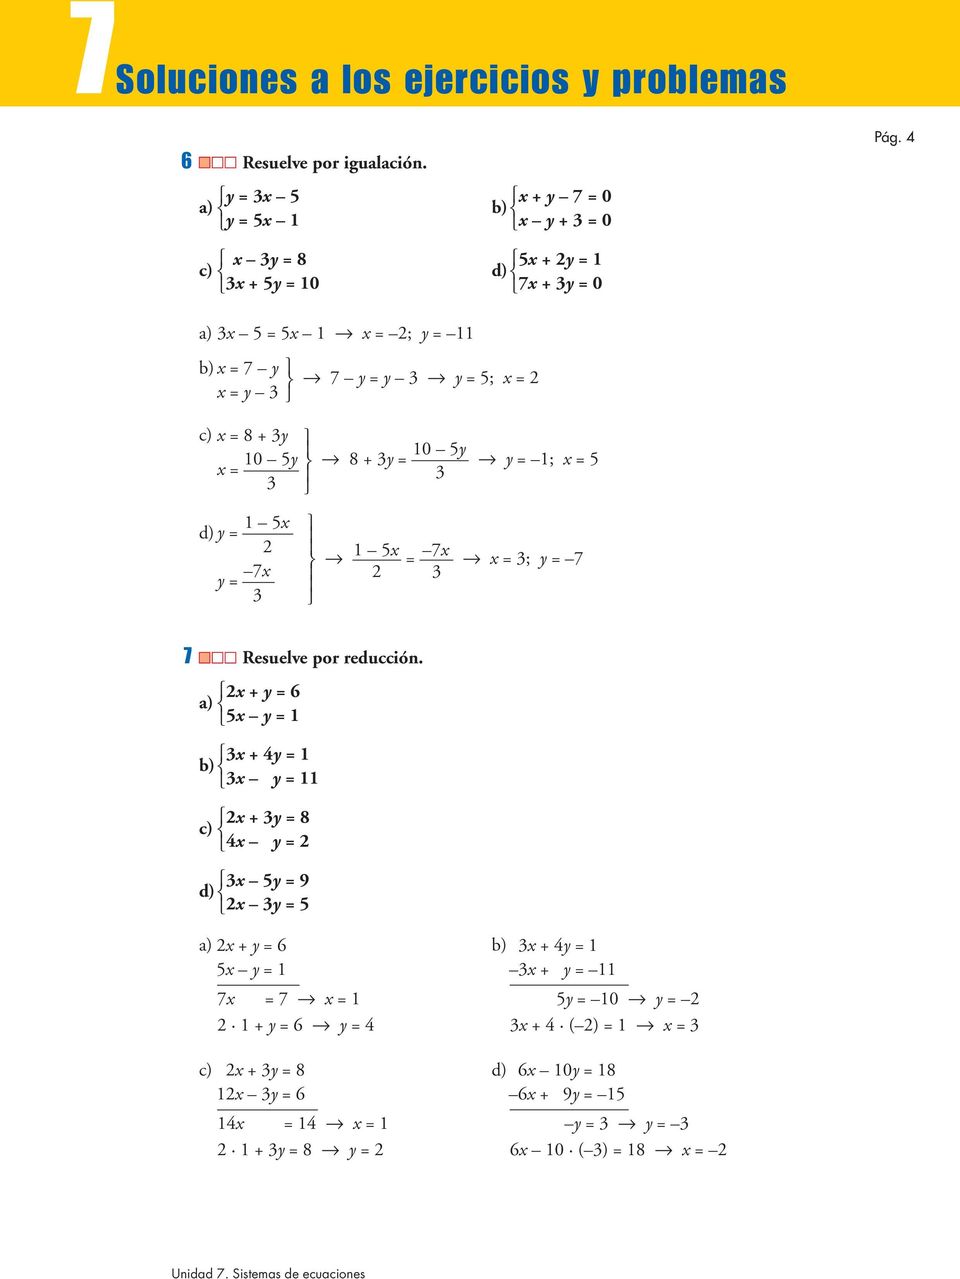 1 5x d) y = 2 7x y = 3 1 5x = 7x x = 3; y = 7 2 3 7 Resuelve por reducción.